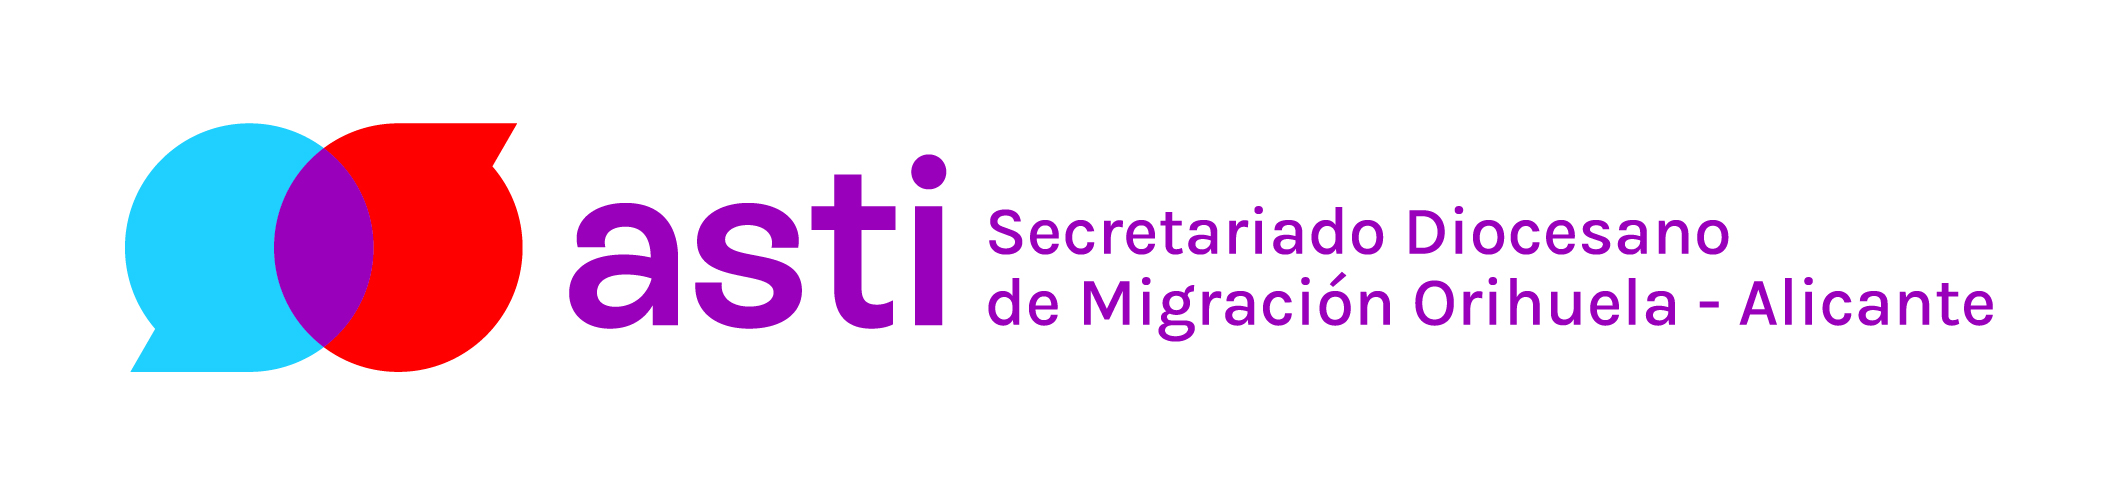 Asti-Alicante Logo